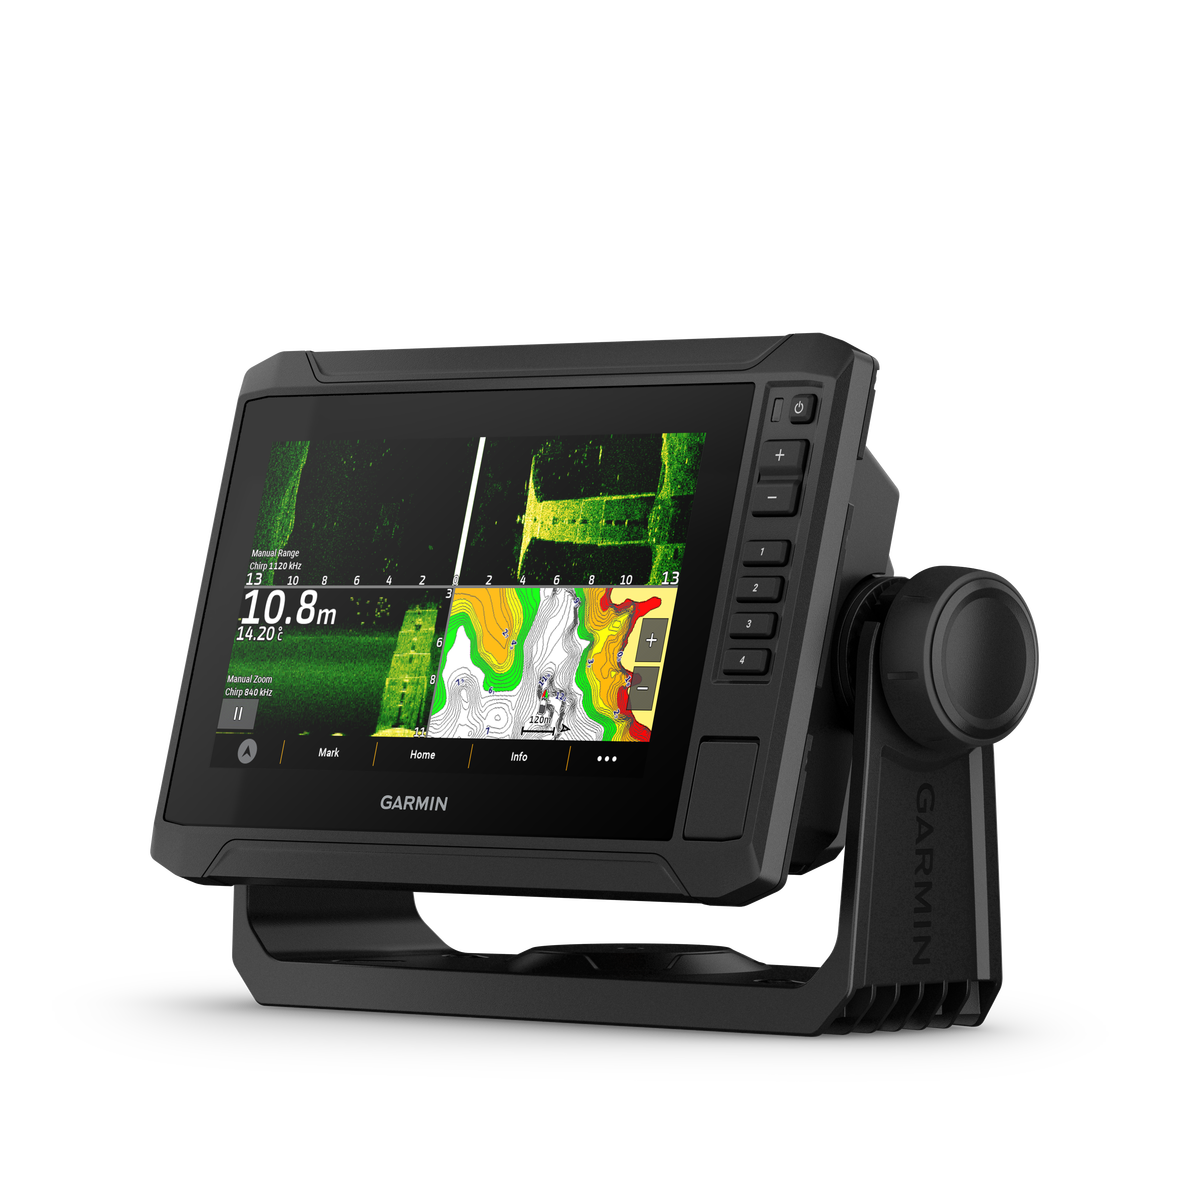 Garmin Echomap UHD2 72sv kaartplotter / fishfinder zonder transducer